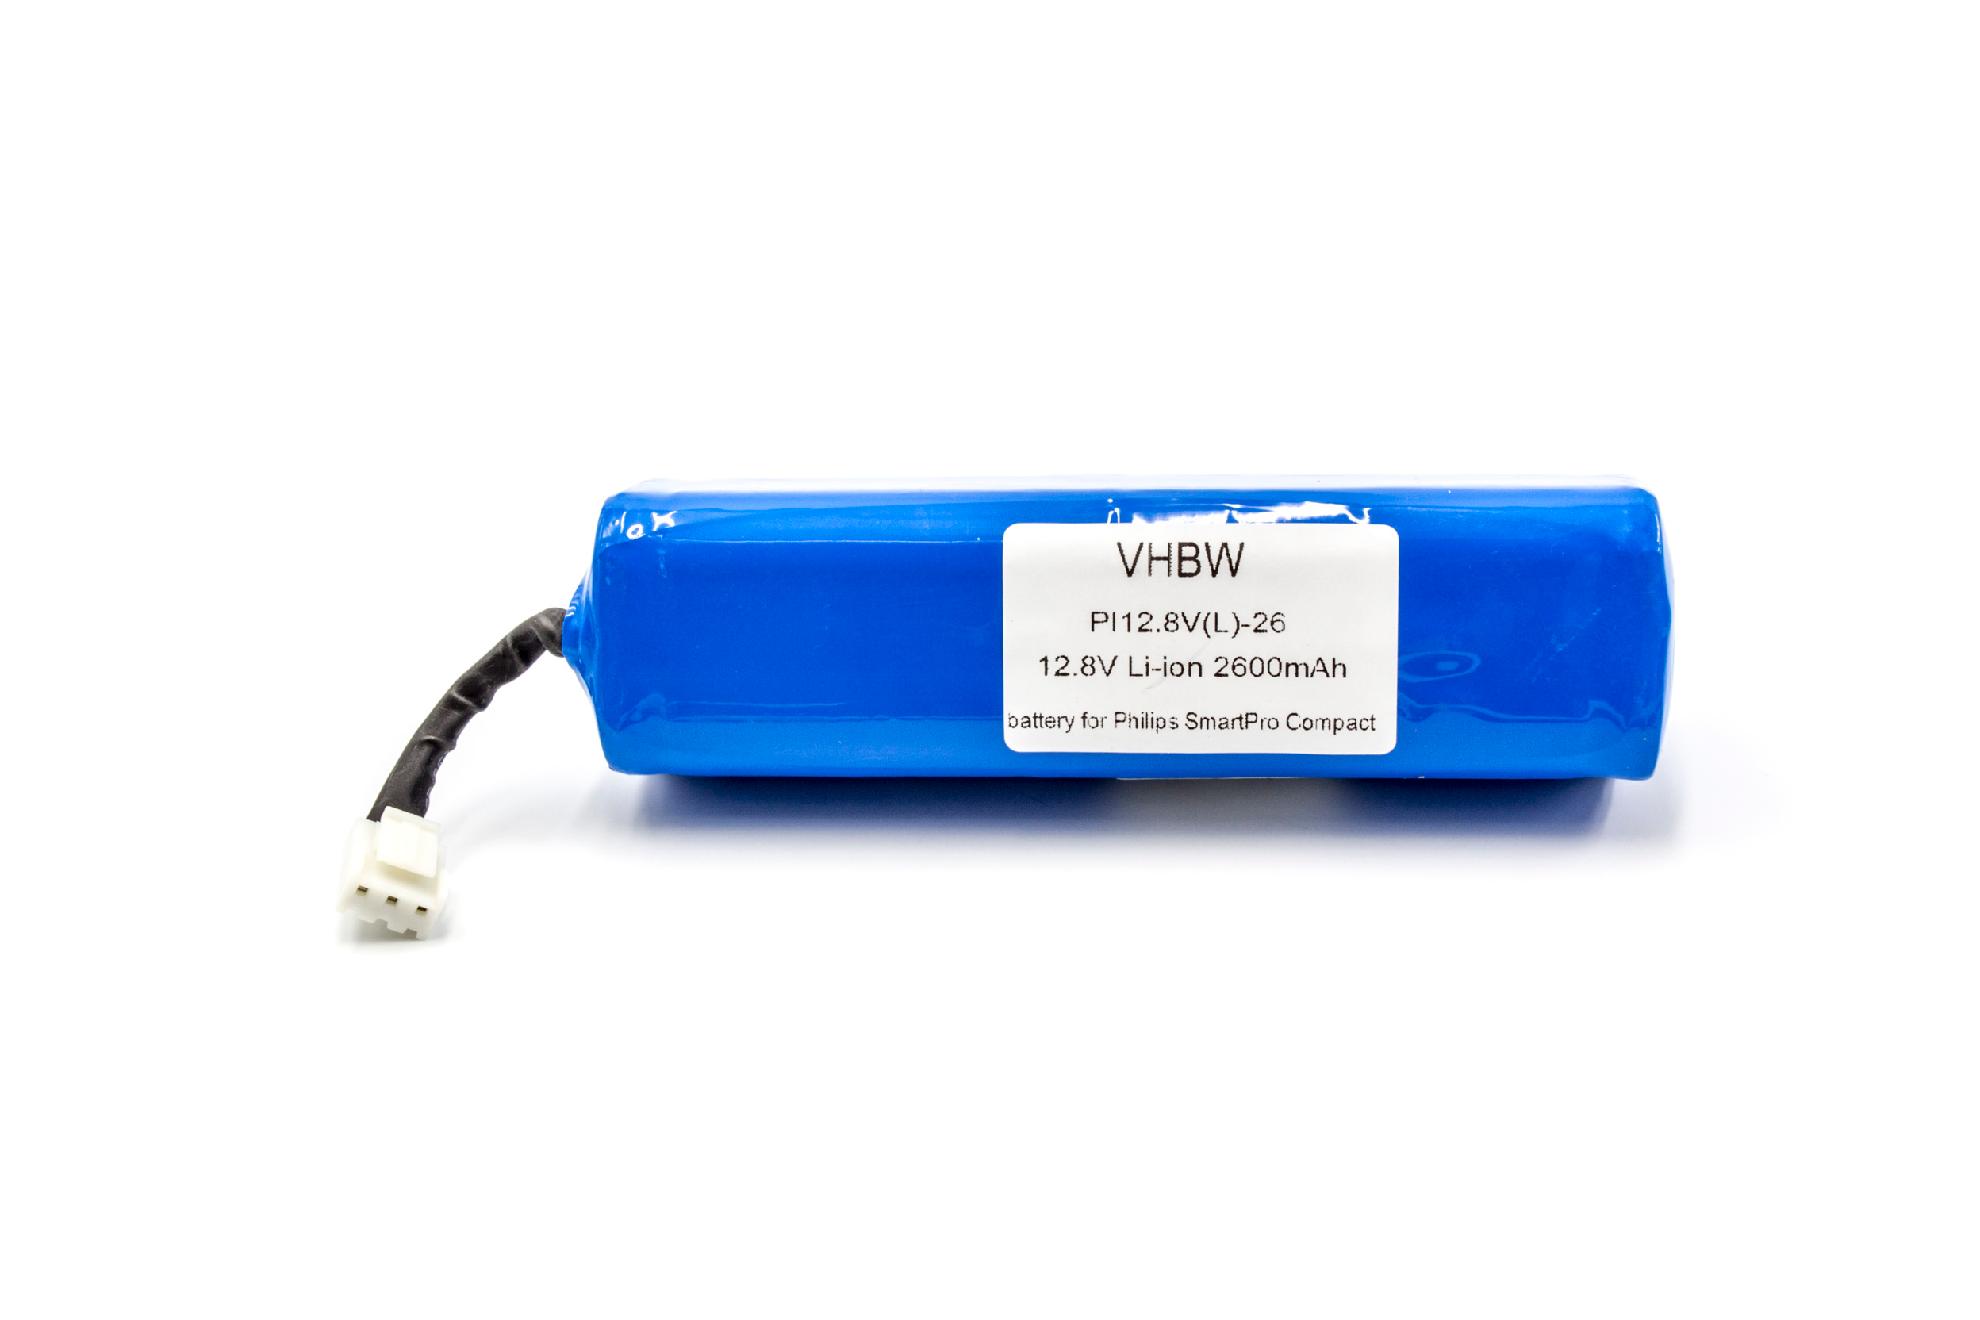 Batterie remplace Philips CP0111/01, 4ICR19/65 pour robot aspirateur - 2600mAh 12,8V Li-ion